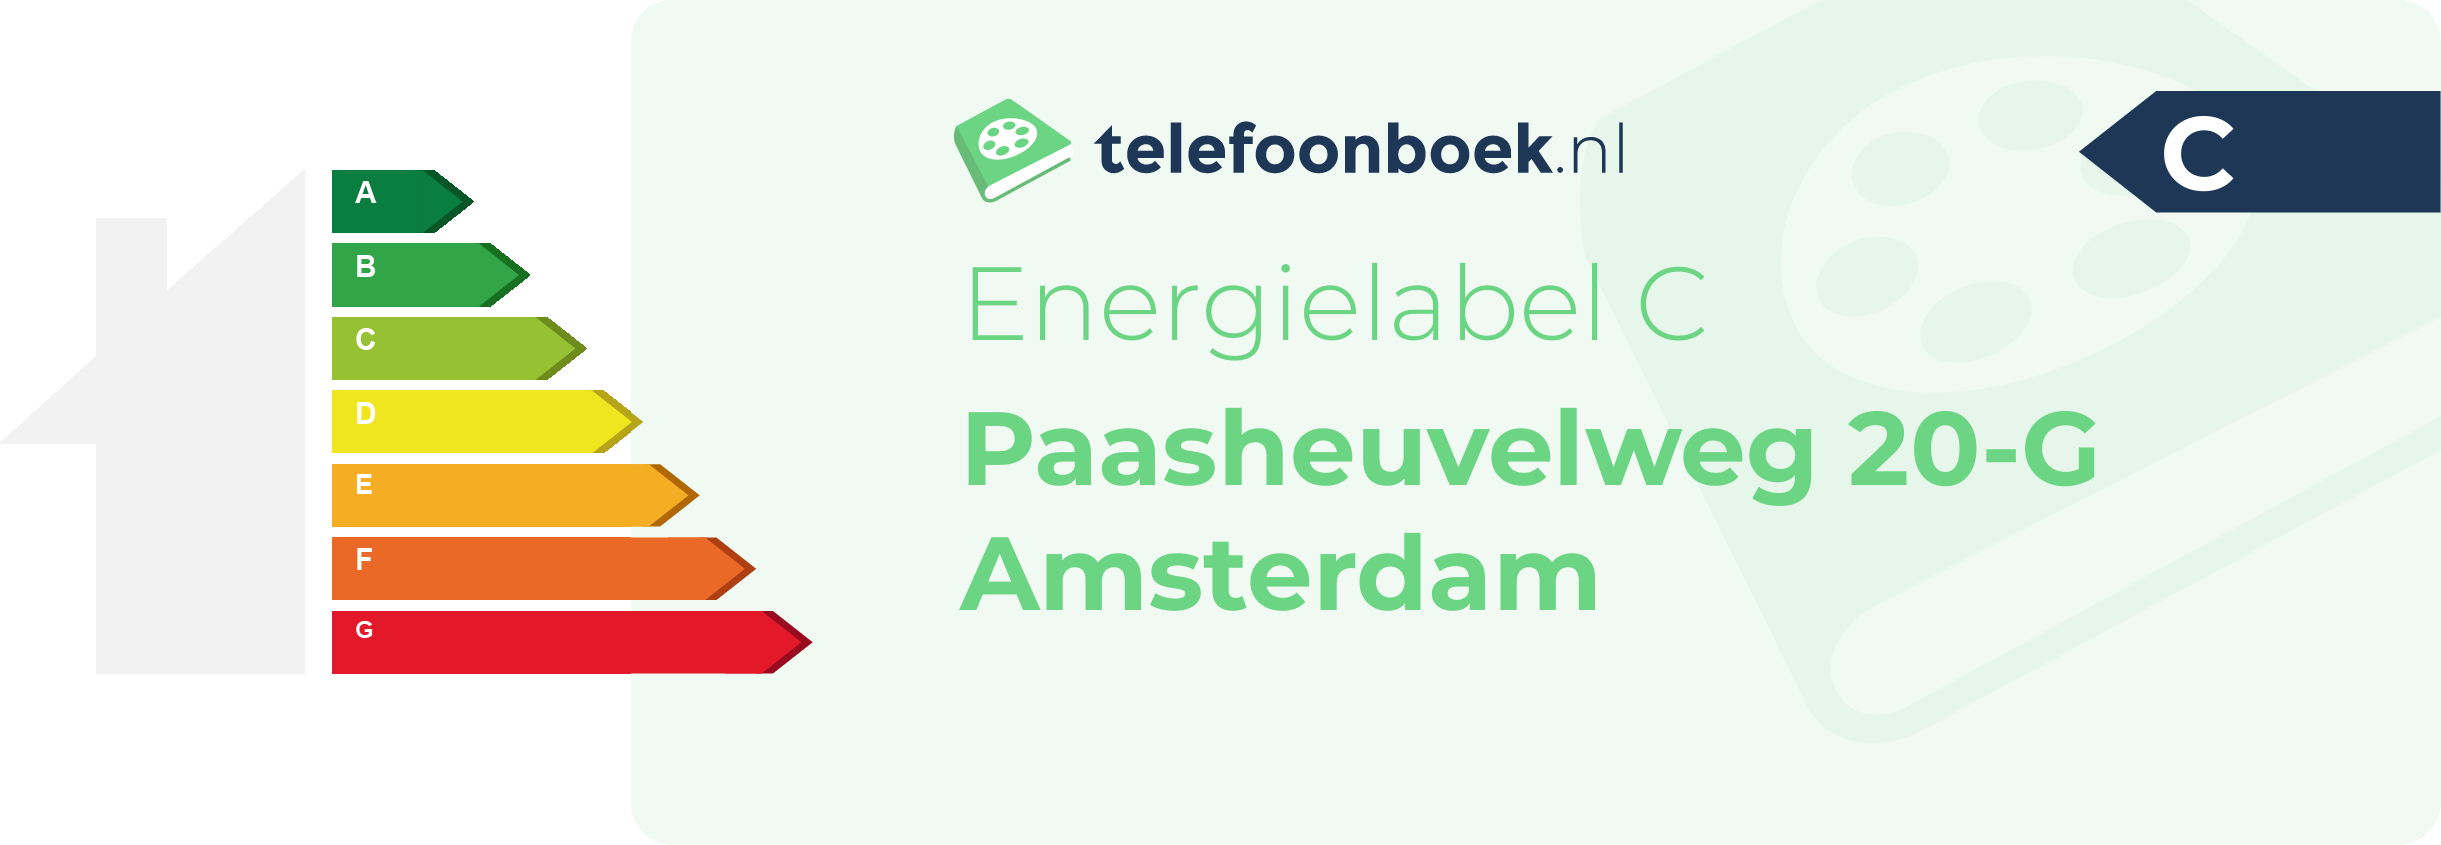 Energielabel Paasheuvelweg 20-G Amsterdam